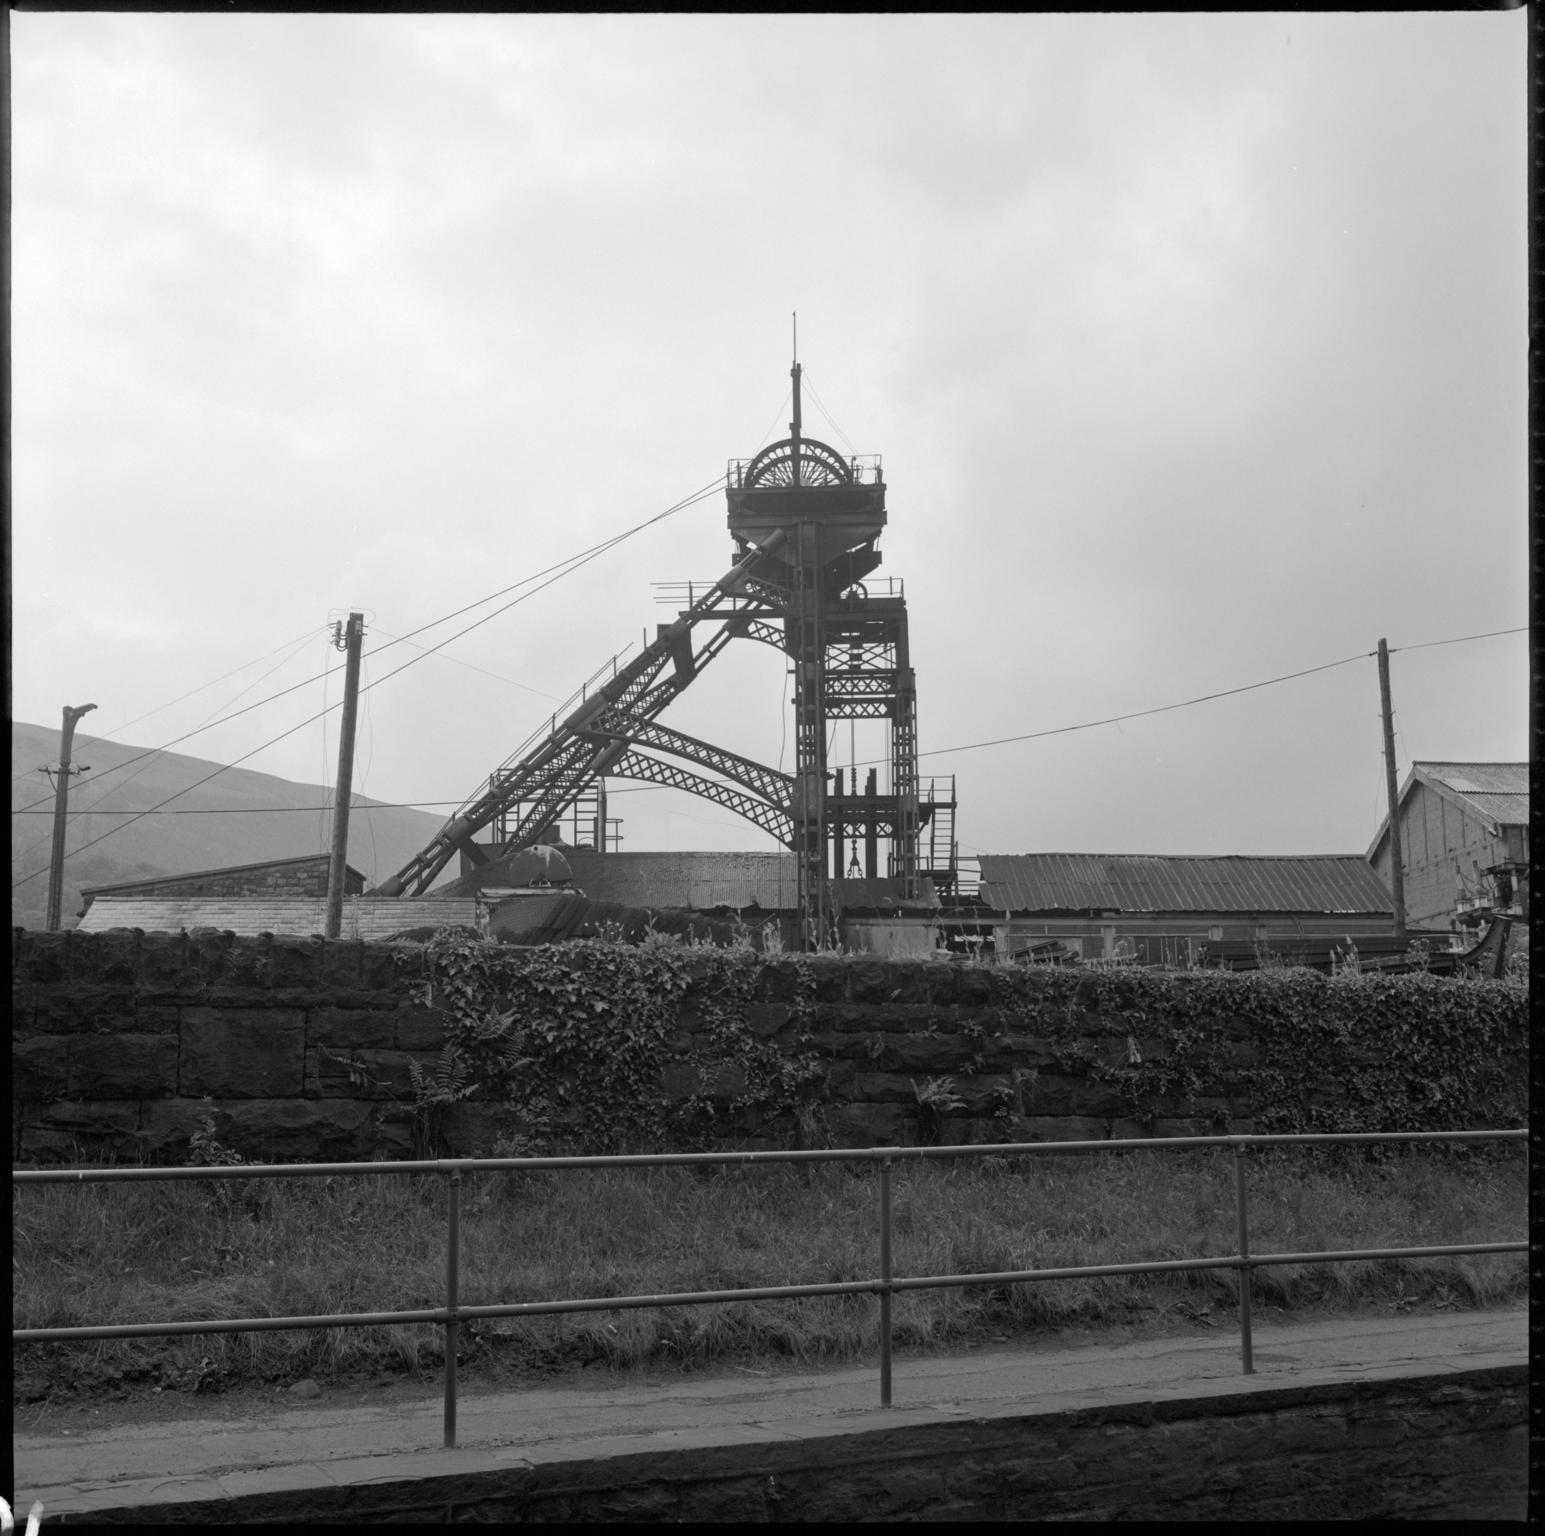 Deep Duffryn Colliery, negative